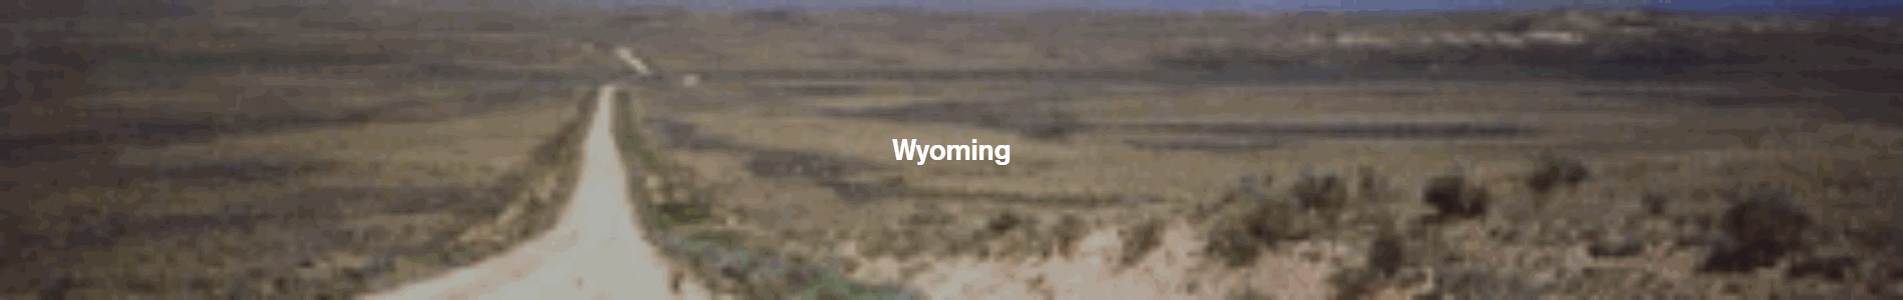 WyomingPageHeader